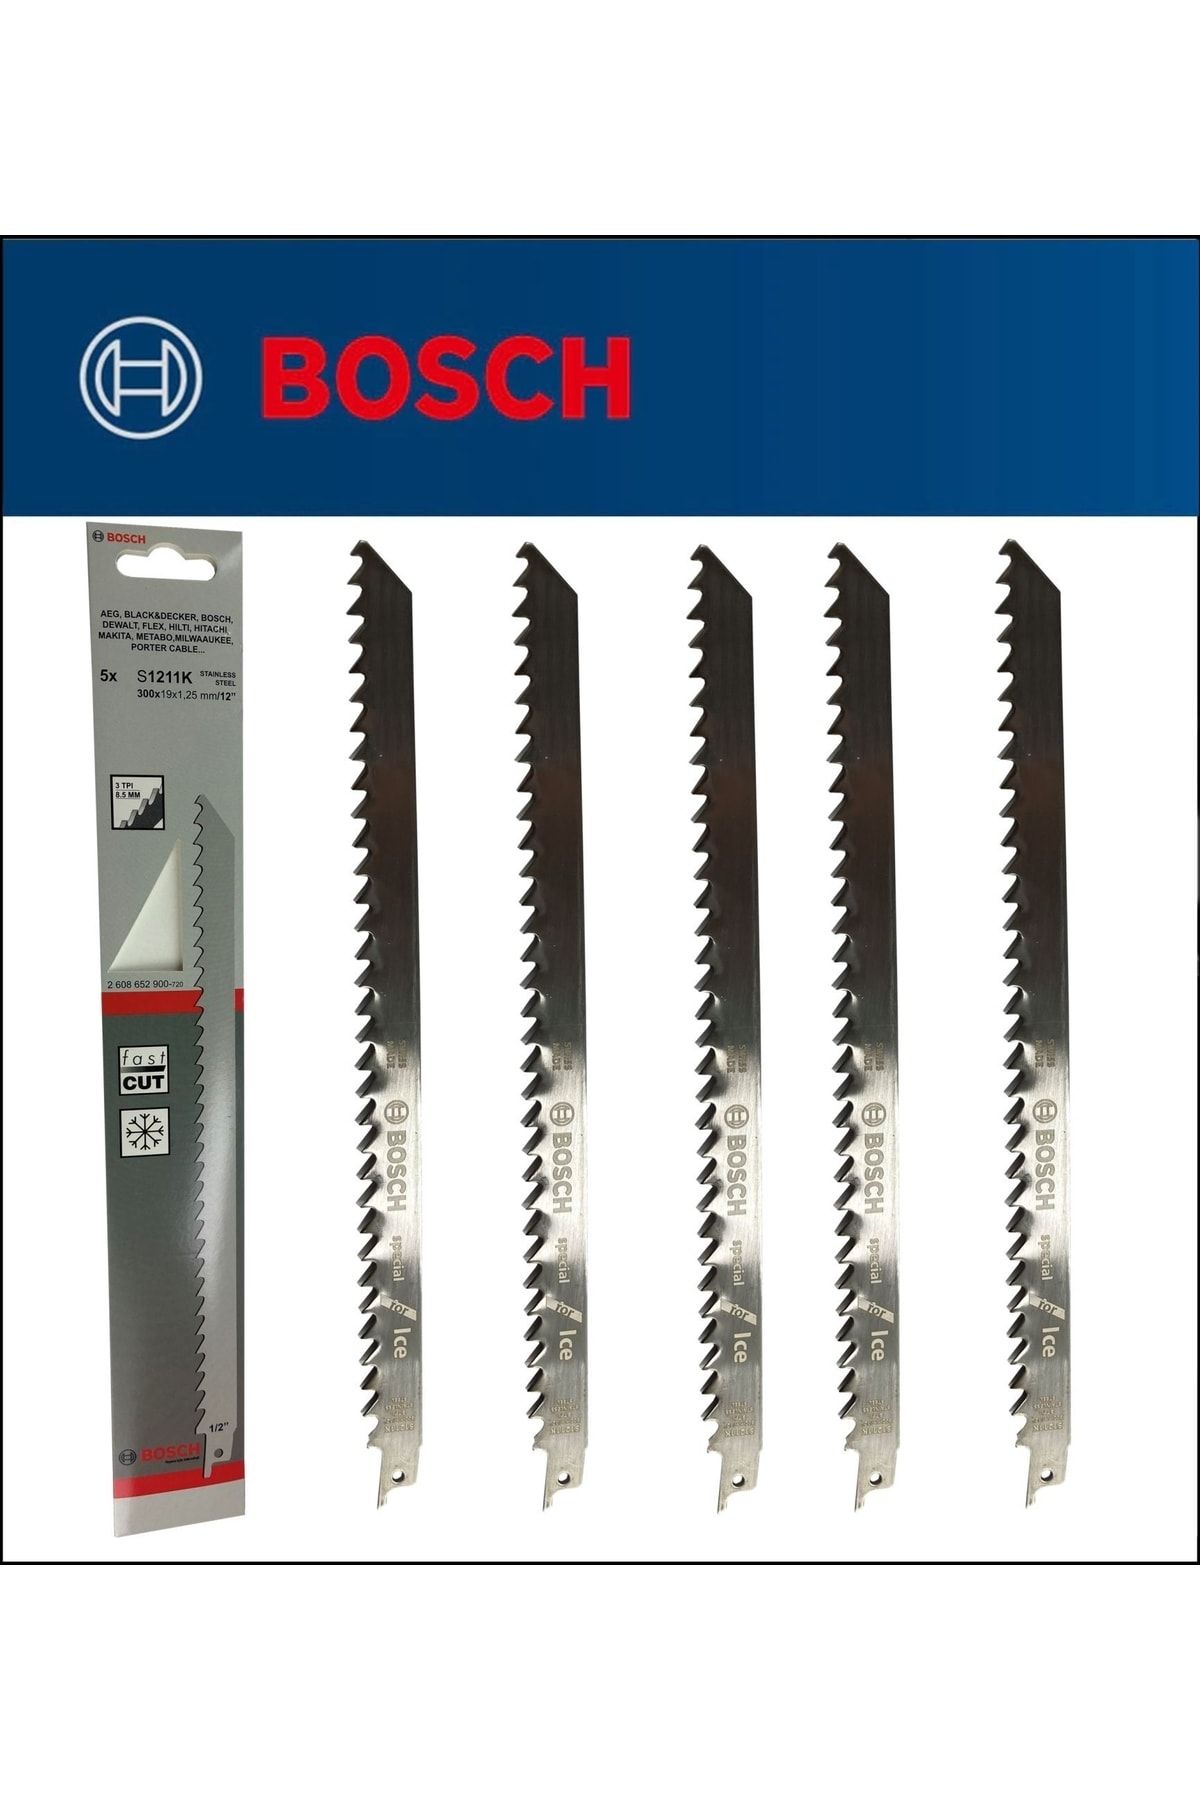 Bosch - Tilki Kuyruğu Bıçağı S 1211 K - Buz Ve Kemik Kesme 2608652900 5'li Paket